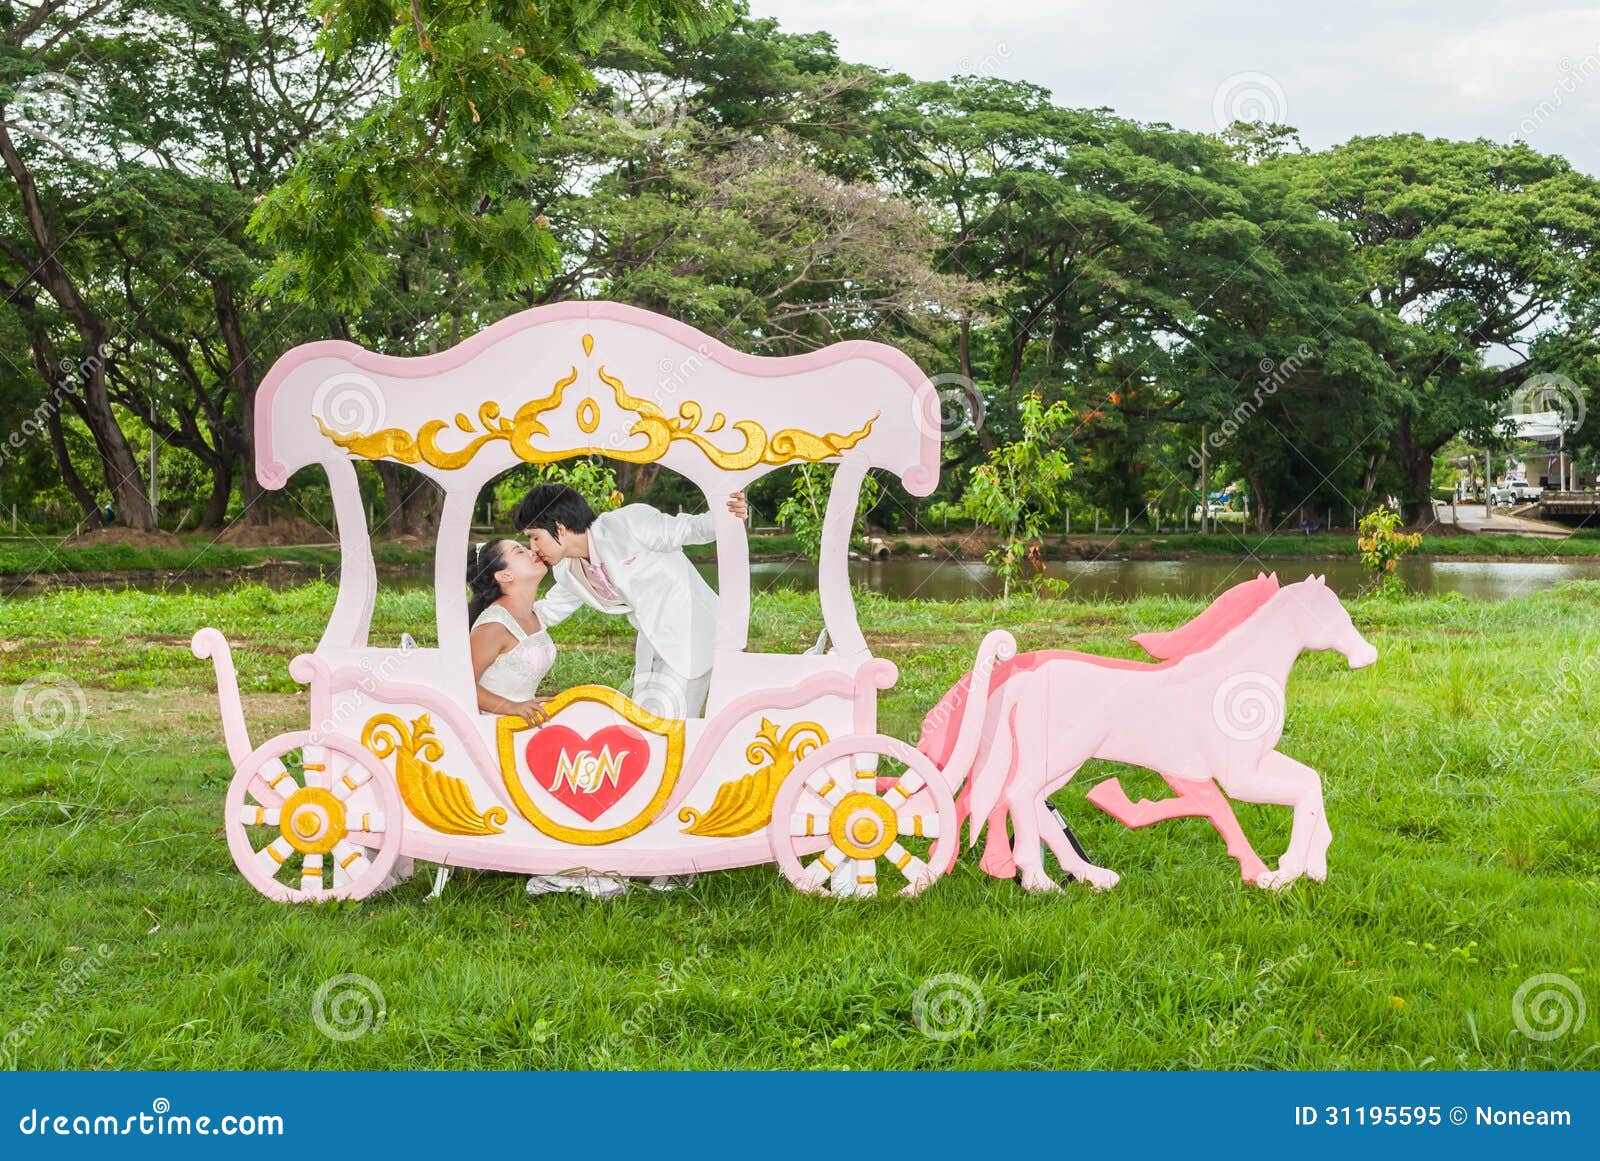 Azjatycki Tajlandzki Bridal całowanie w miłość frachcie. Azjatycki Tajlandzki bridal całuje w romantycznym frachcie z miłość tematem jako Princess i książe.